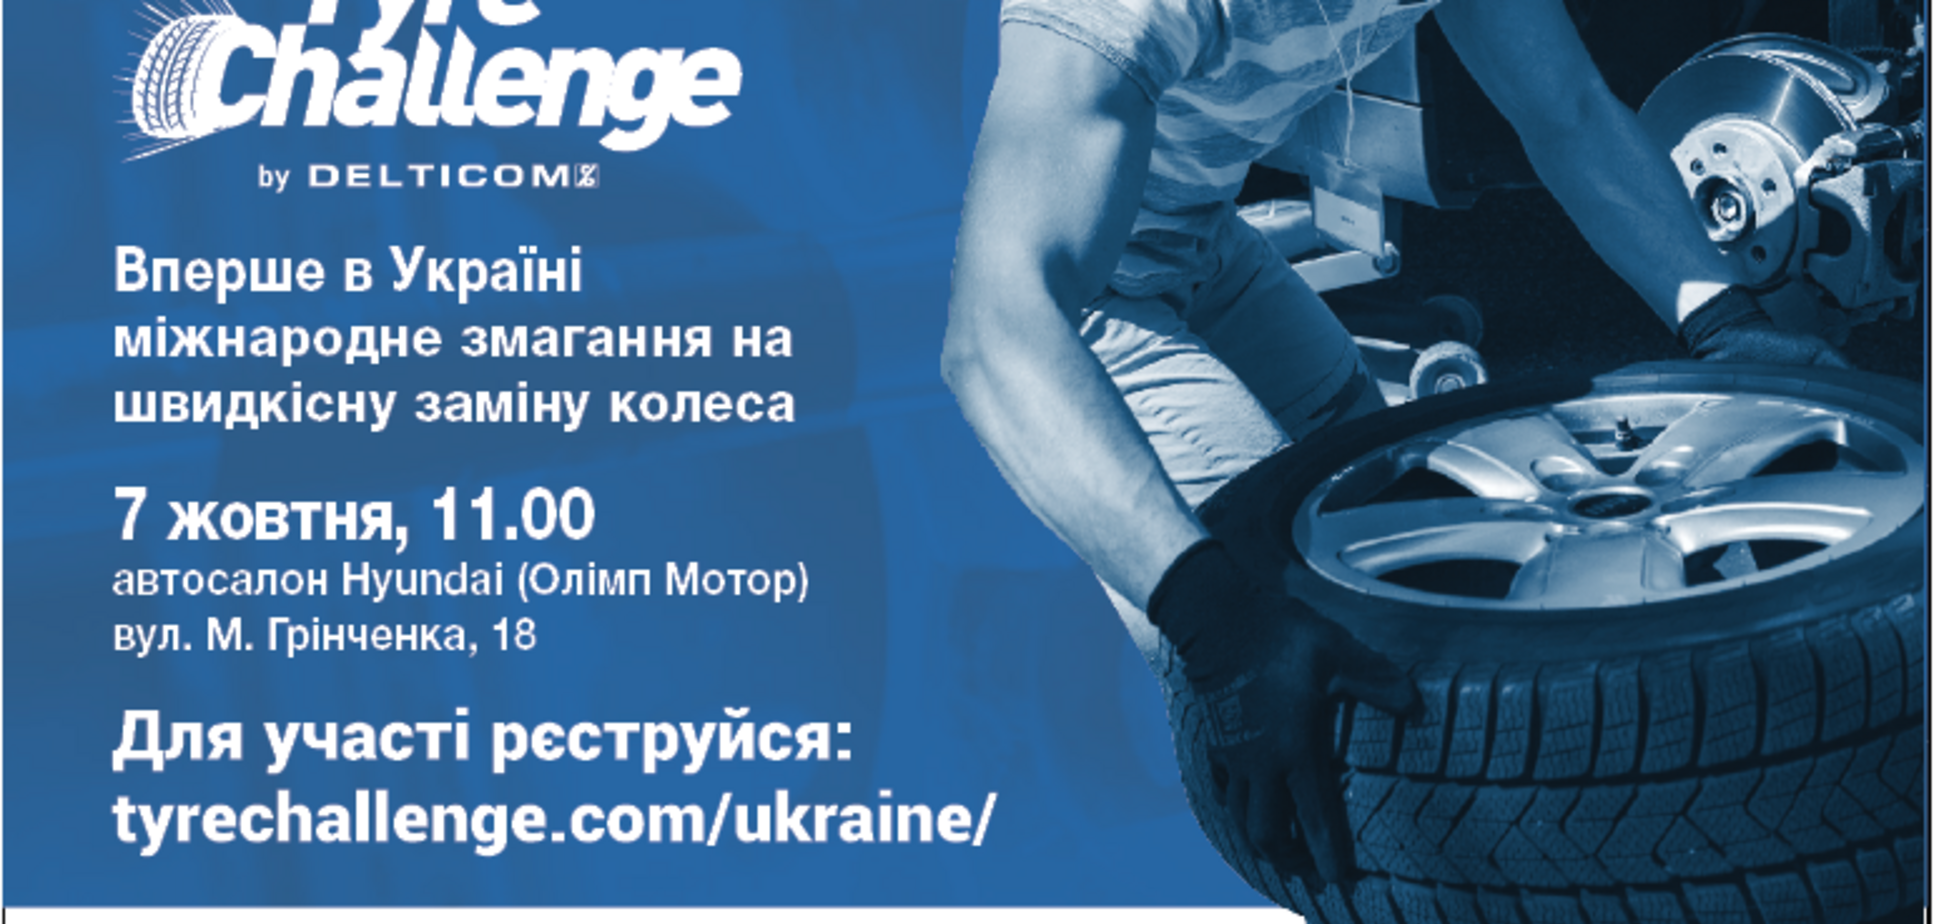 Международное соревнование Tyre Challenge впервые в Украине